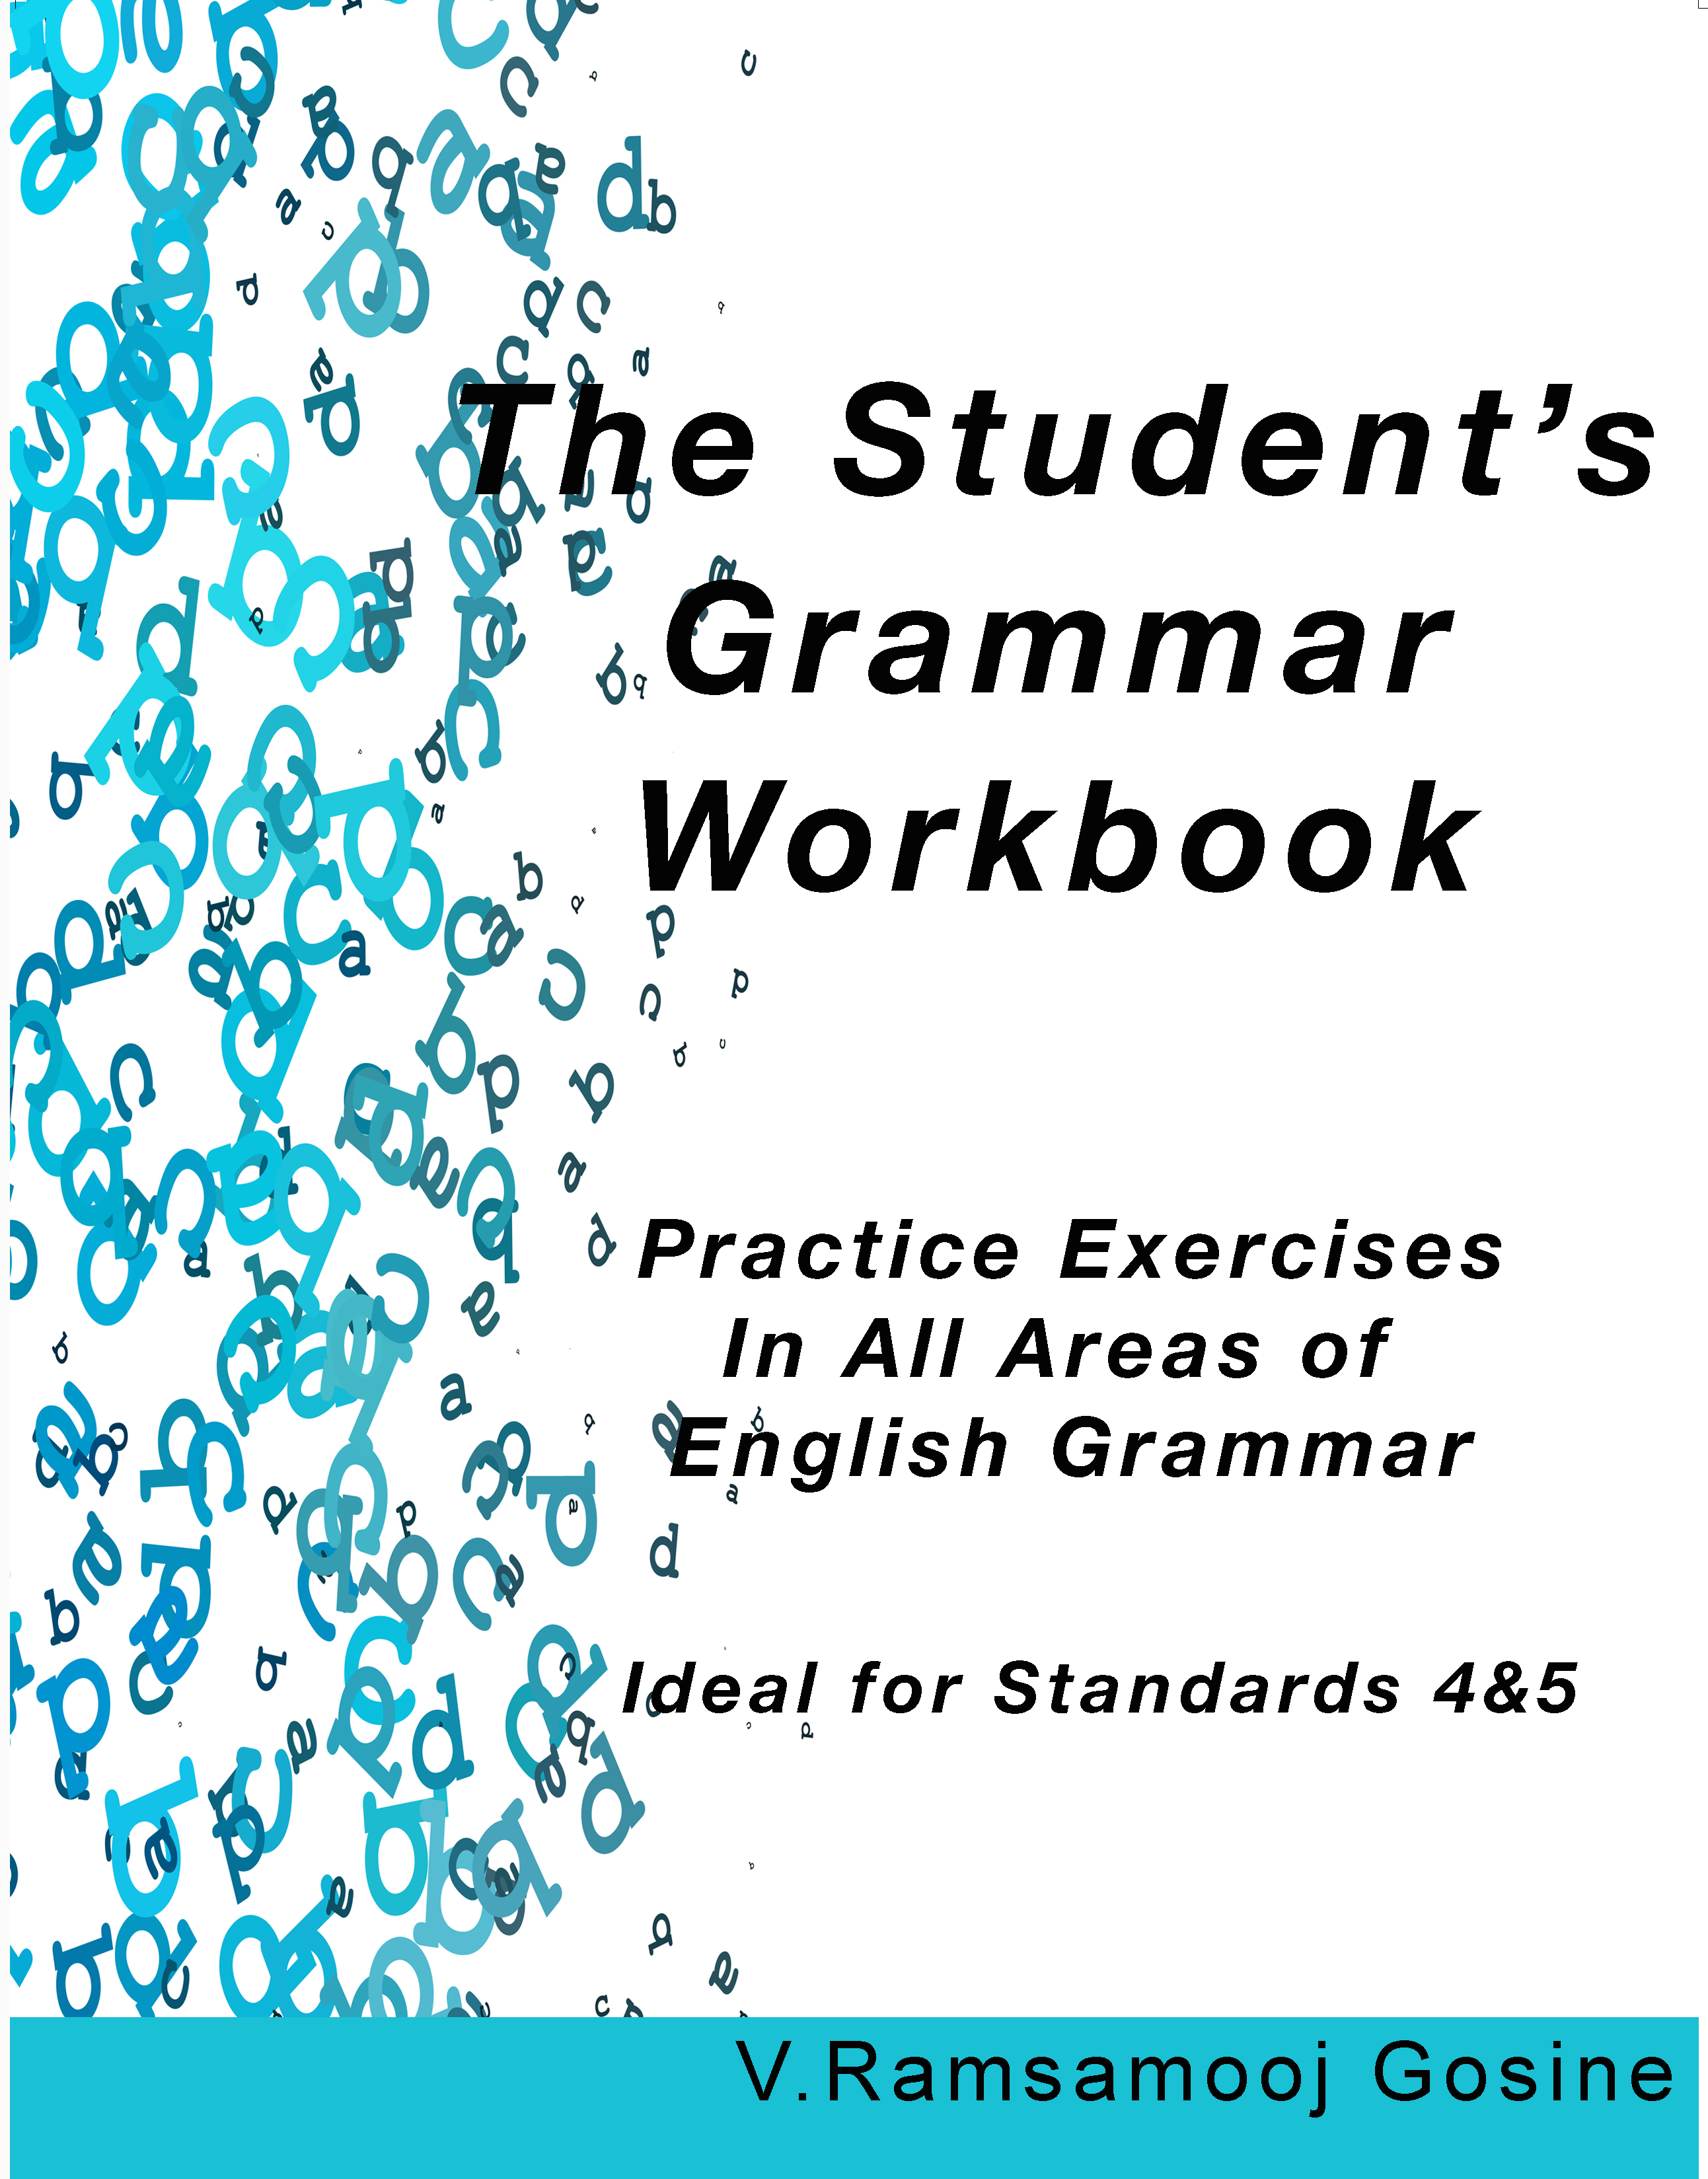 The Student's Grammar Workbook